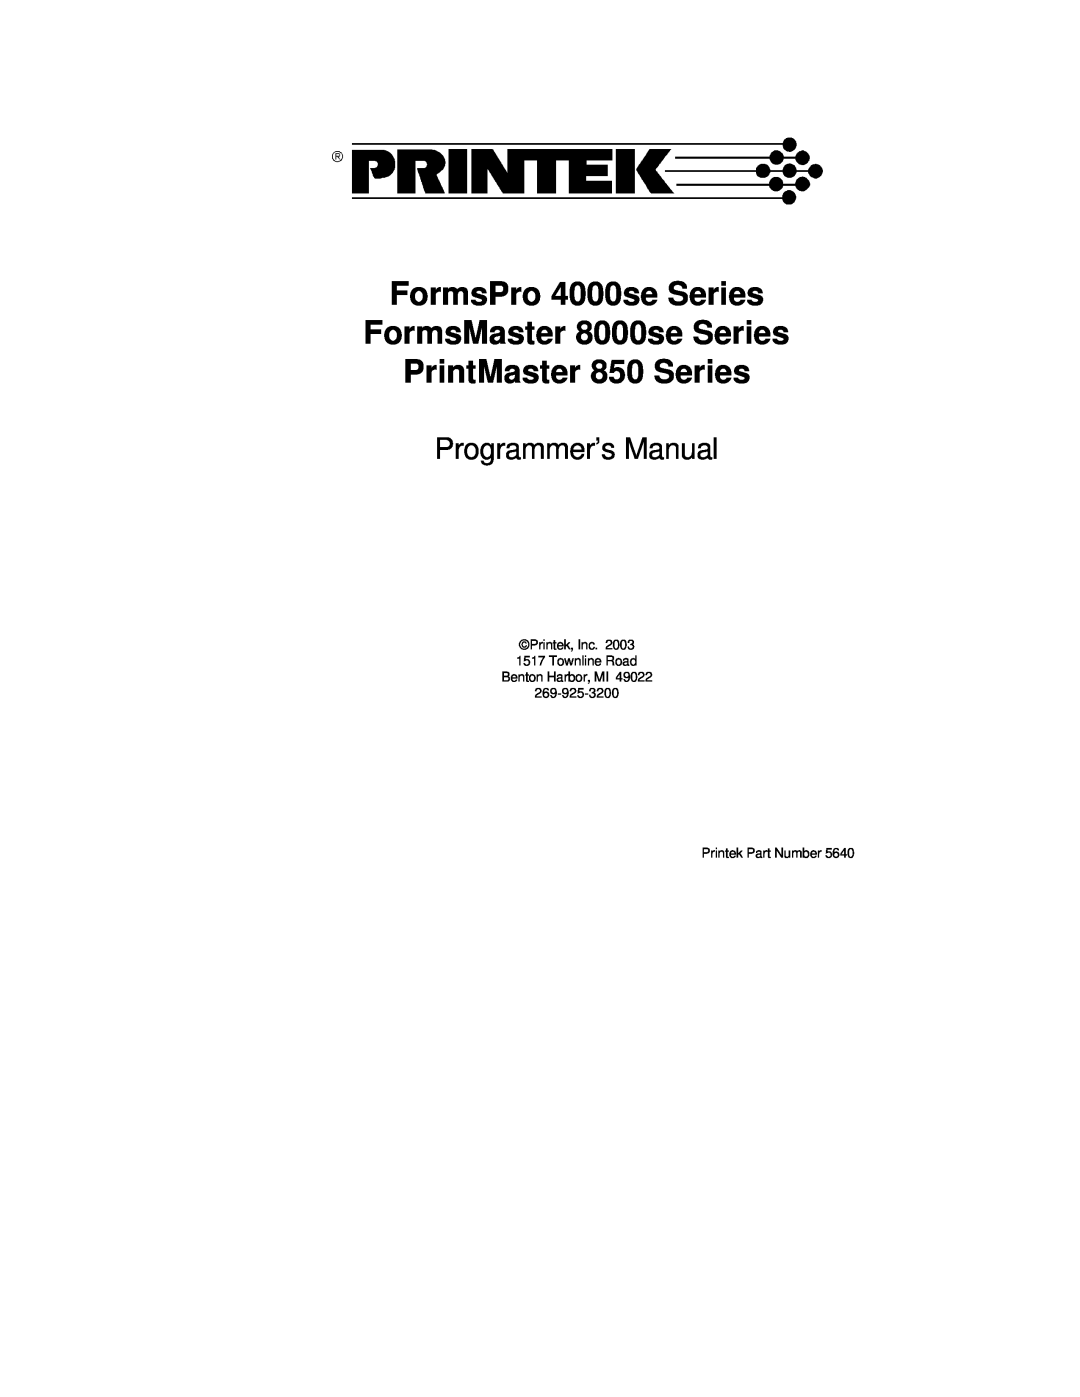 Printek manual FormsPro 4000se Series FormsMaster 8000se Series, PrintMaster 850 Series, Programmer’s Manual 